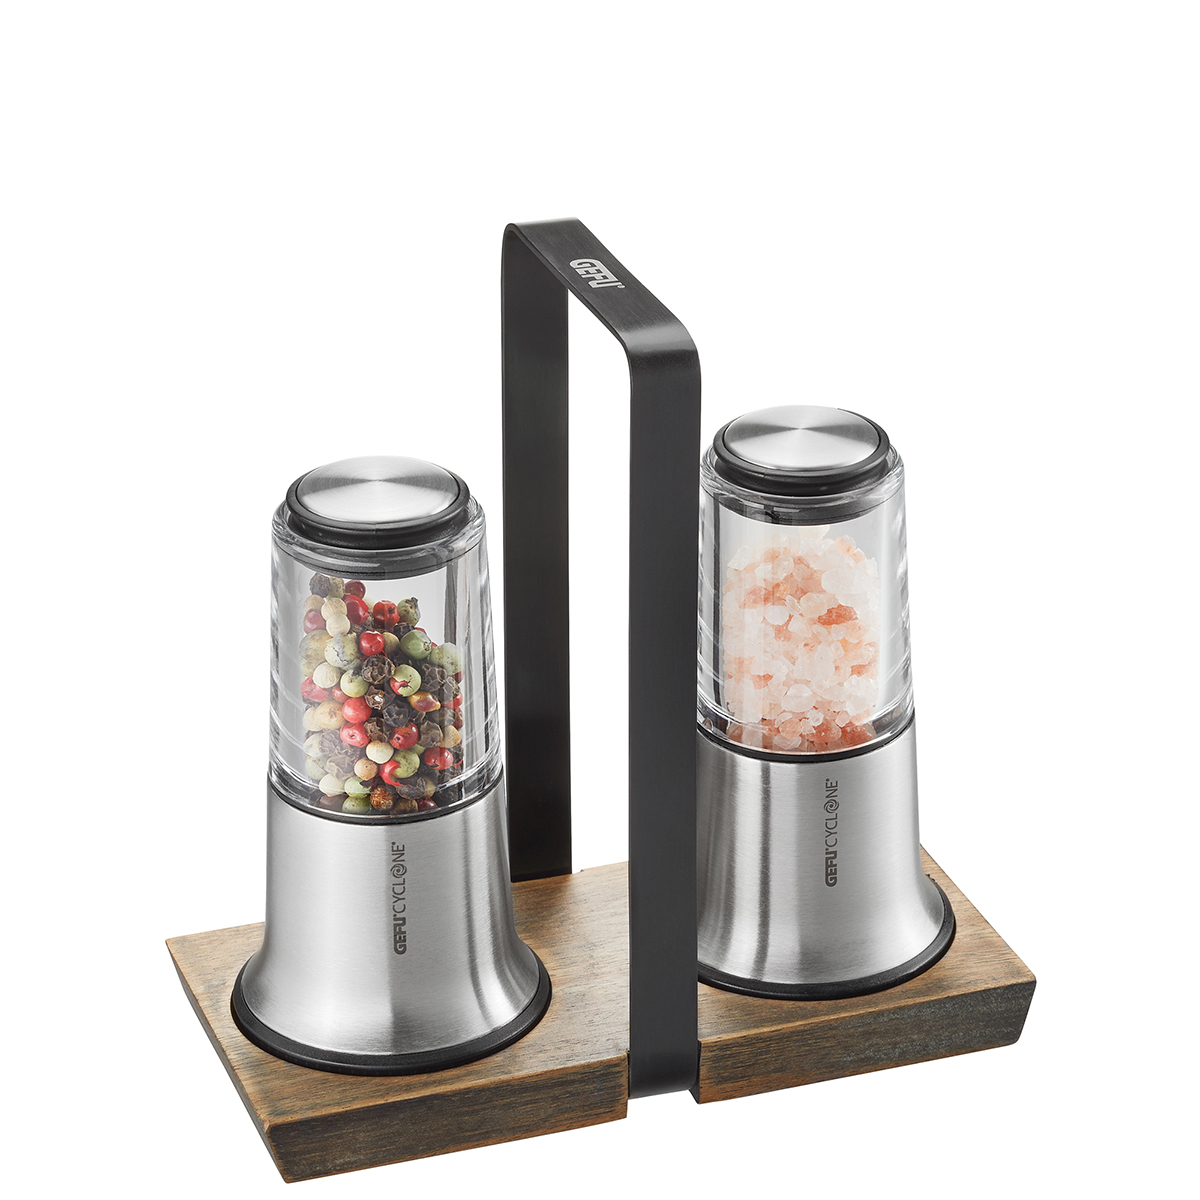 Salz- und Pfeffermühlen-Set X-PLOSION® Edelstahl inklusive Menage aus Akazienholz  Keramik-Mahlwerk,stufenlose Mahlgradeinstellung